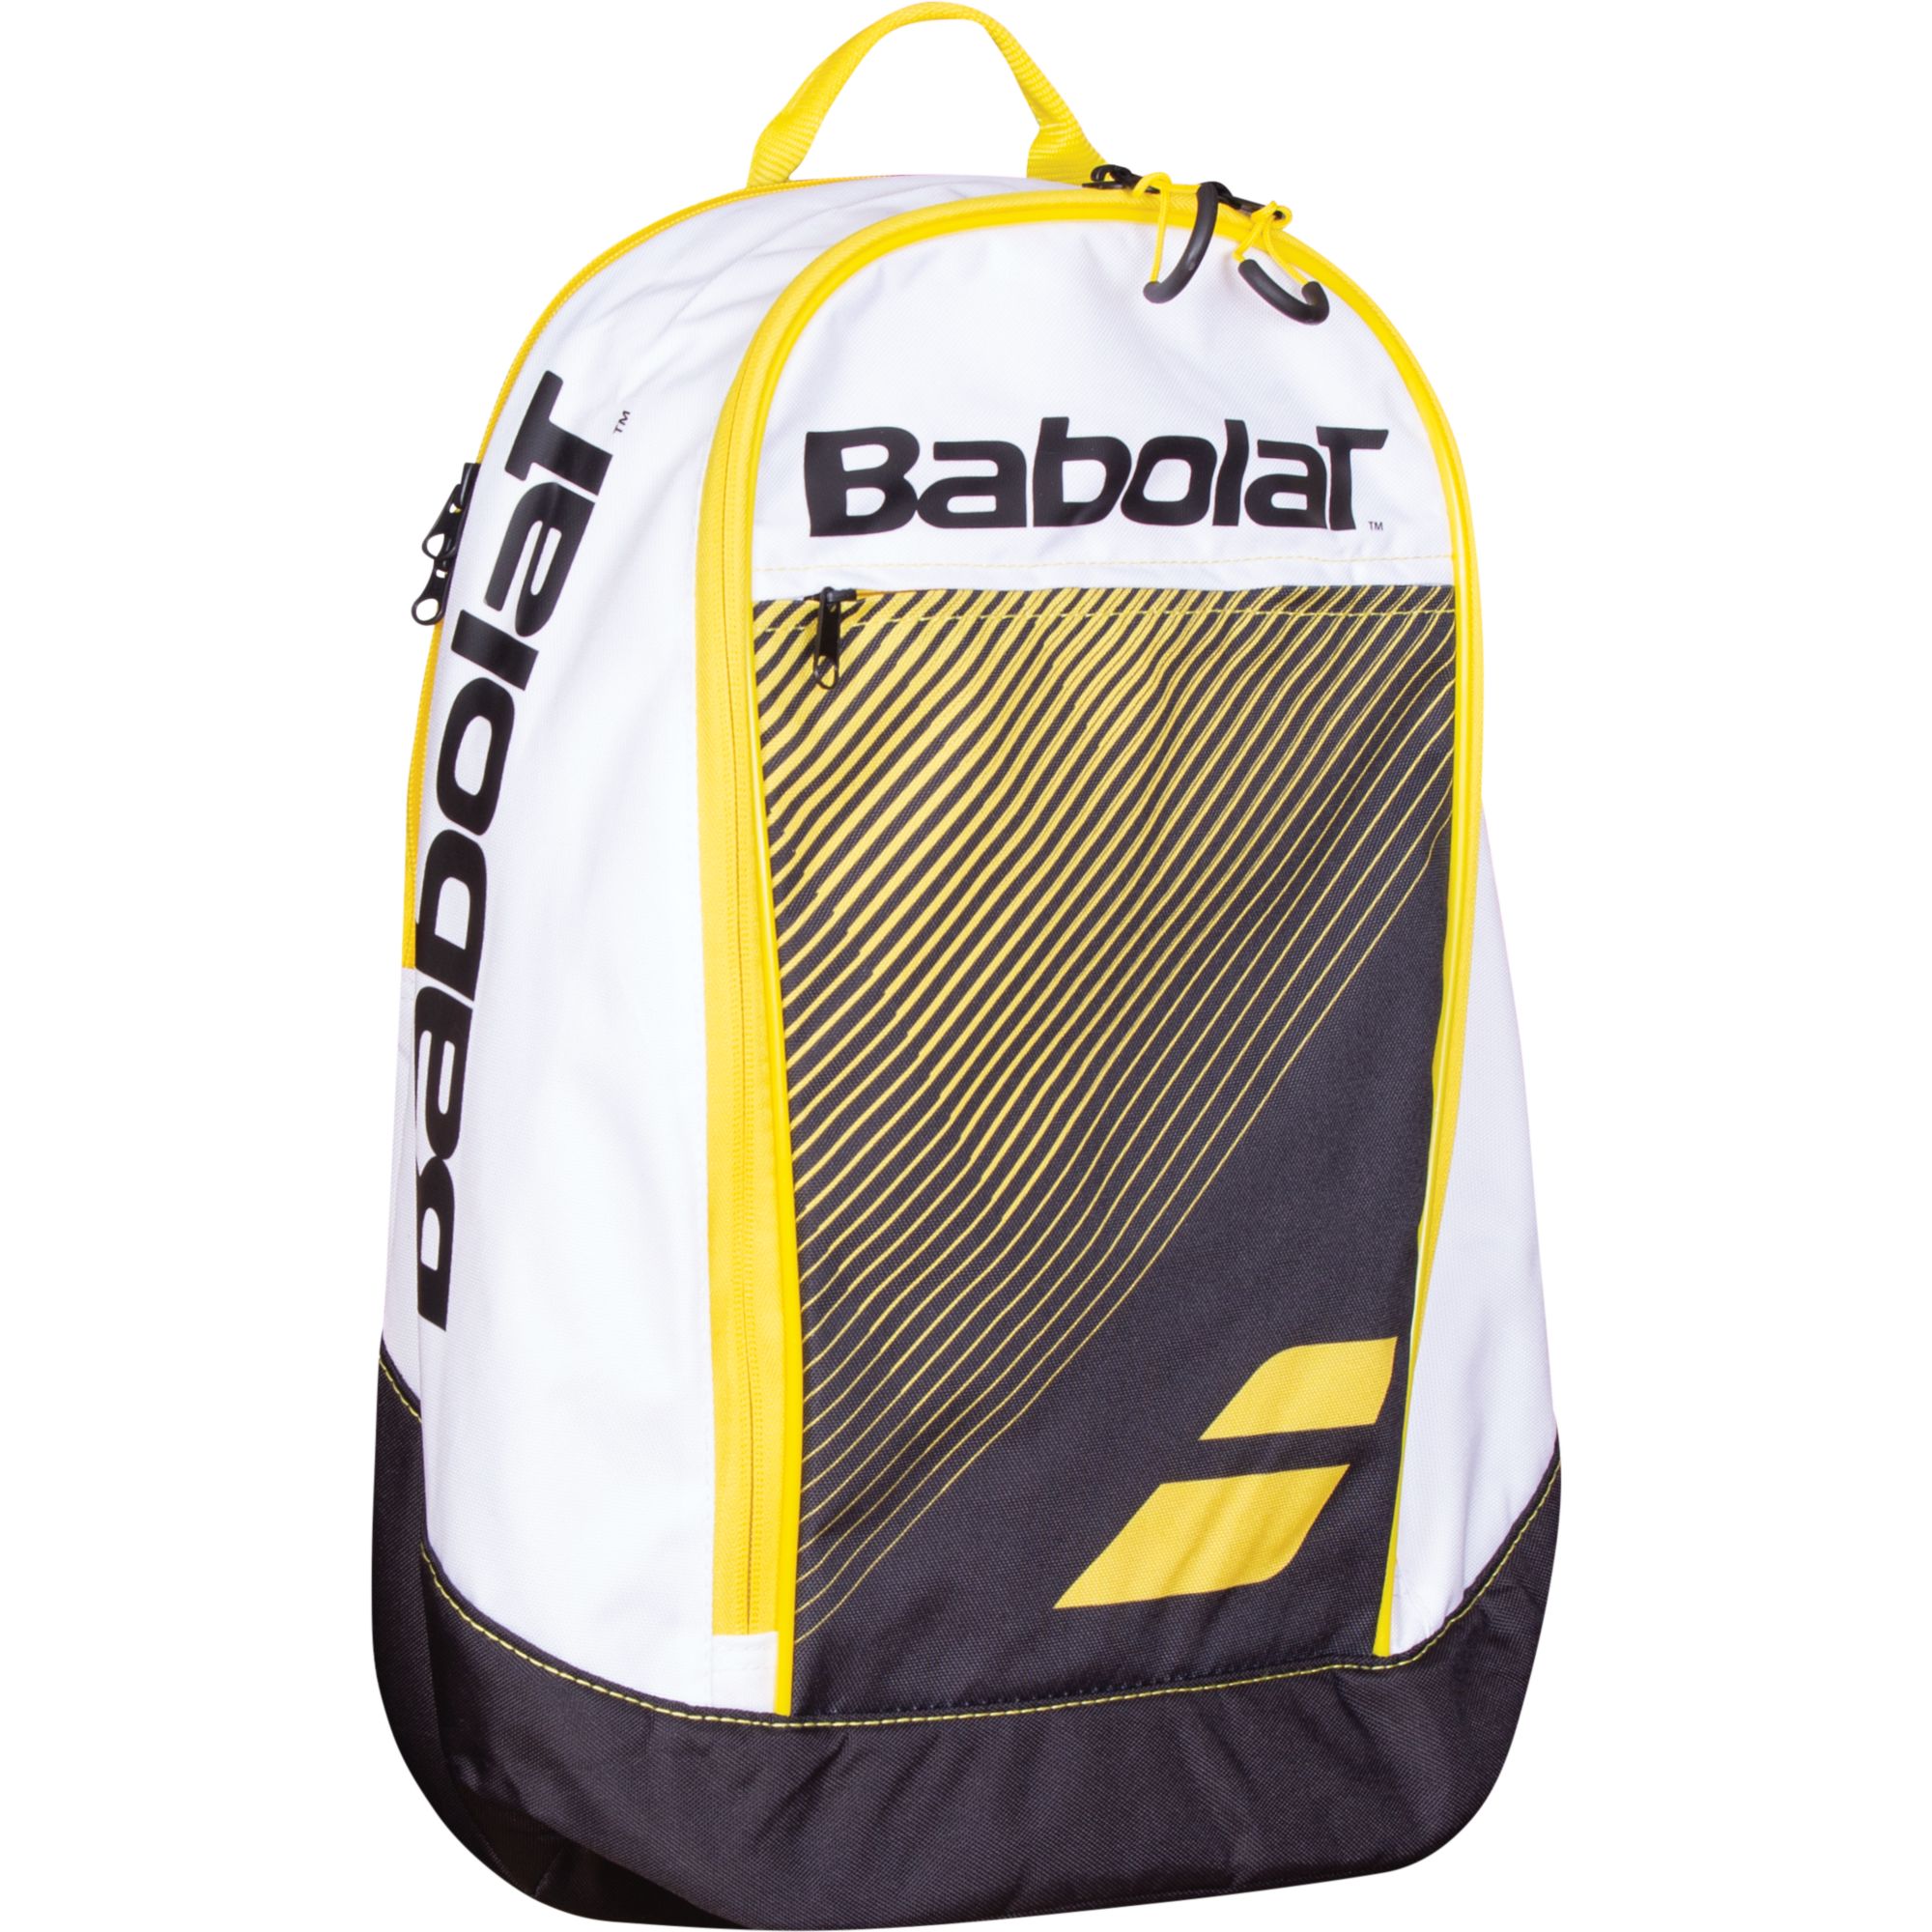 Club Backpack BABOLAT imagine 2022